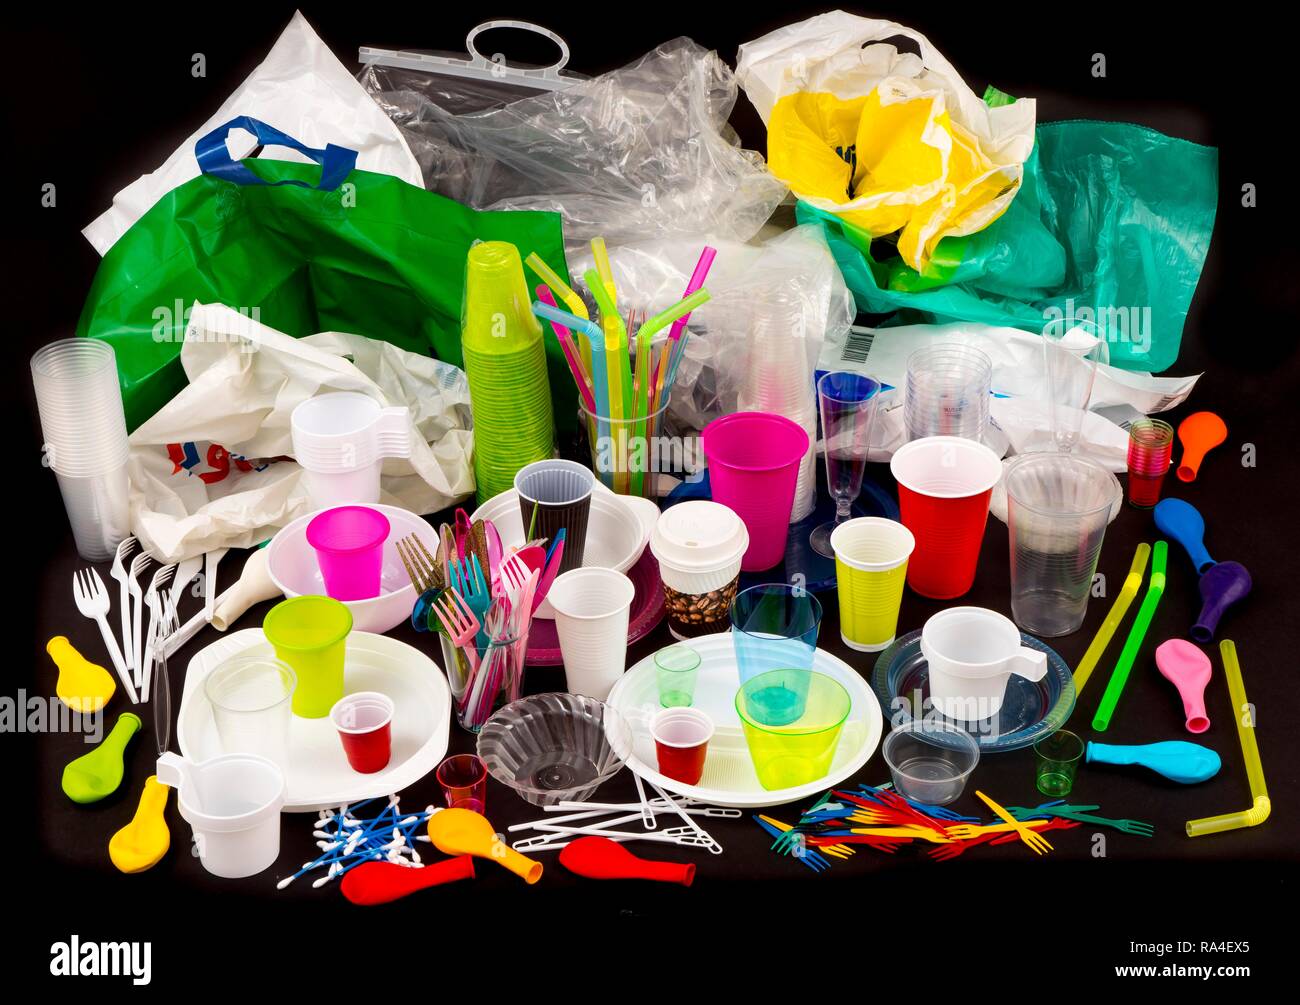 Einweggeschirr, Kunststoff Besteck, Geschirr aus Kunststoff, Kunststoff, Plastikbecher, Plastiktüten und andere Abfälle aus Kunststoffen Stockfoto